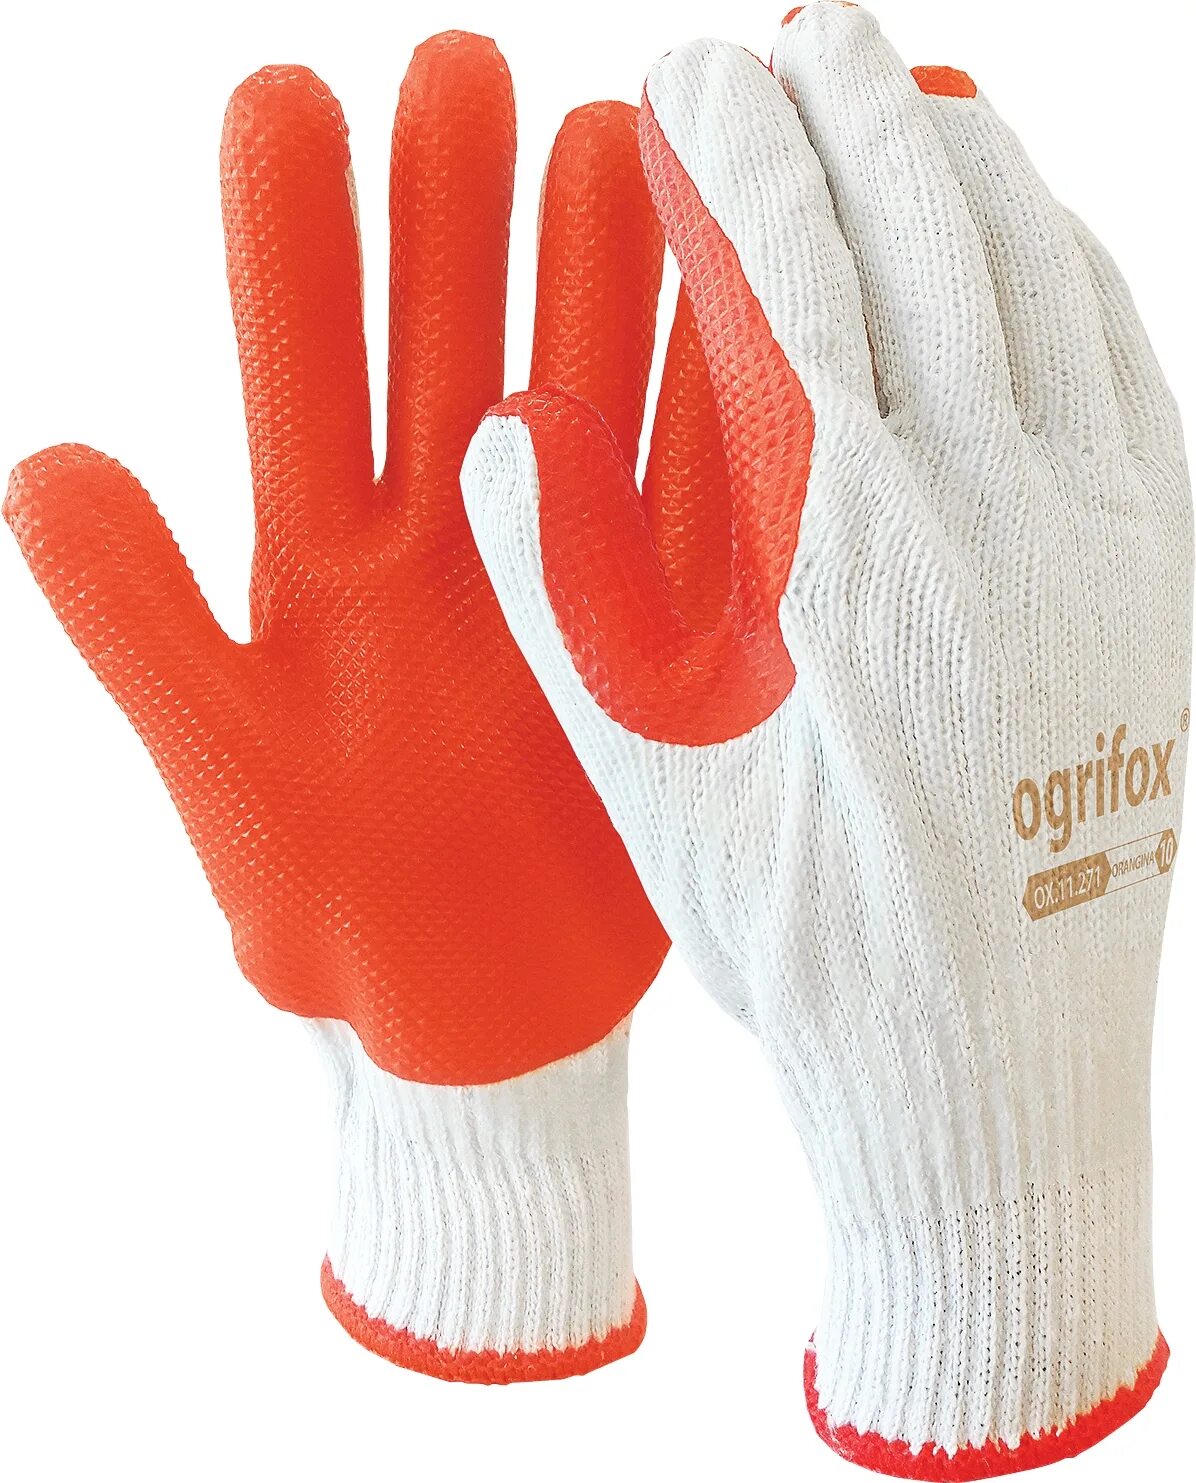 Перчатки en420 Vostok. Перчатки стекольщика "Торо" 0.18. Перчатки стекольщика (оранж-желтые). Перчатки Hobby (8,5, т.серый).